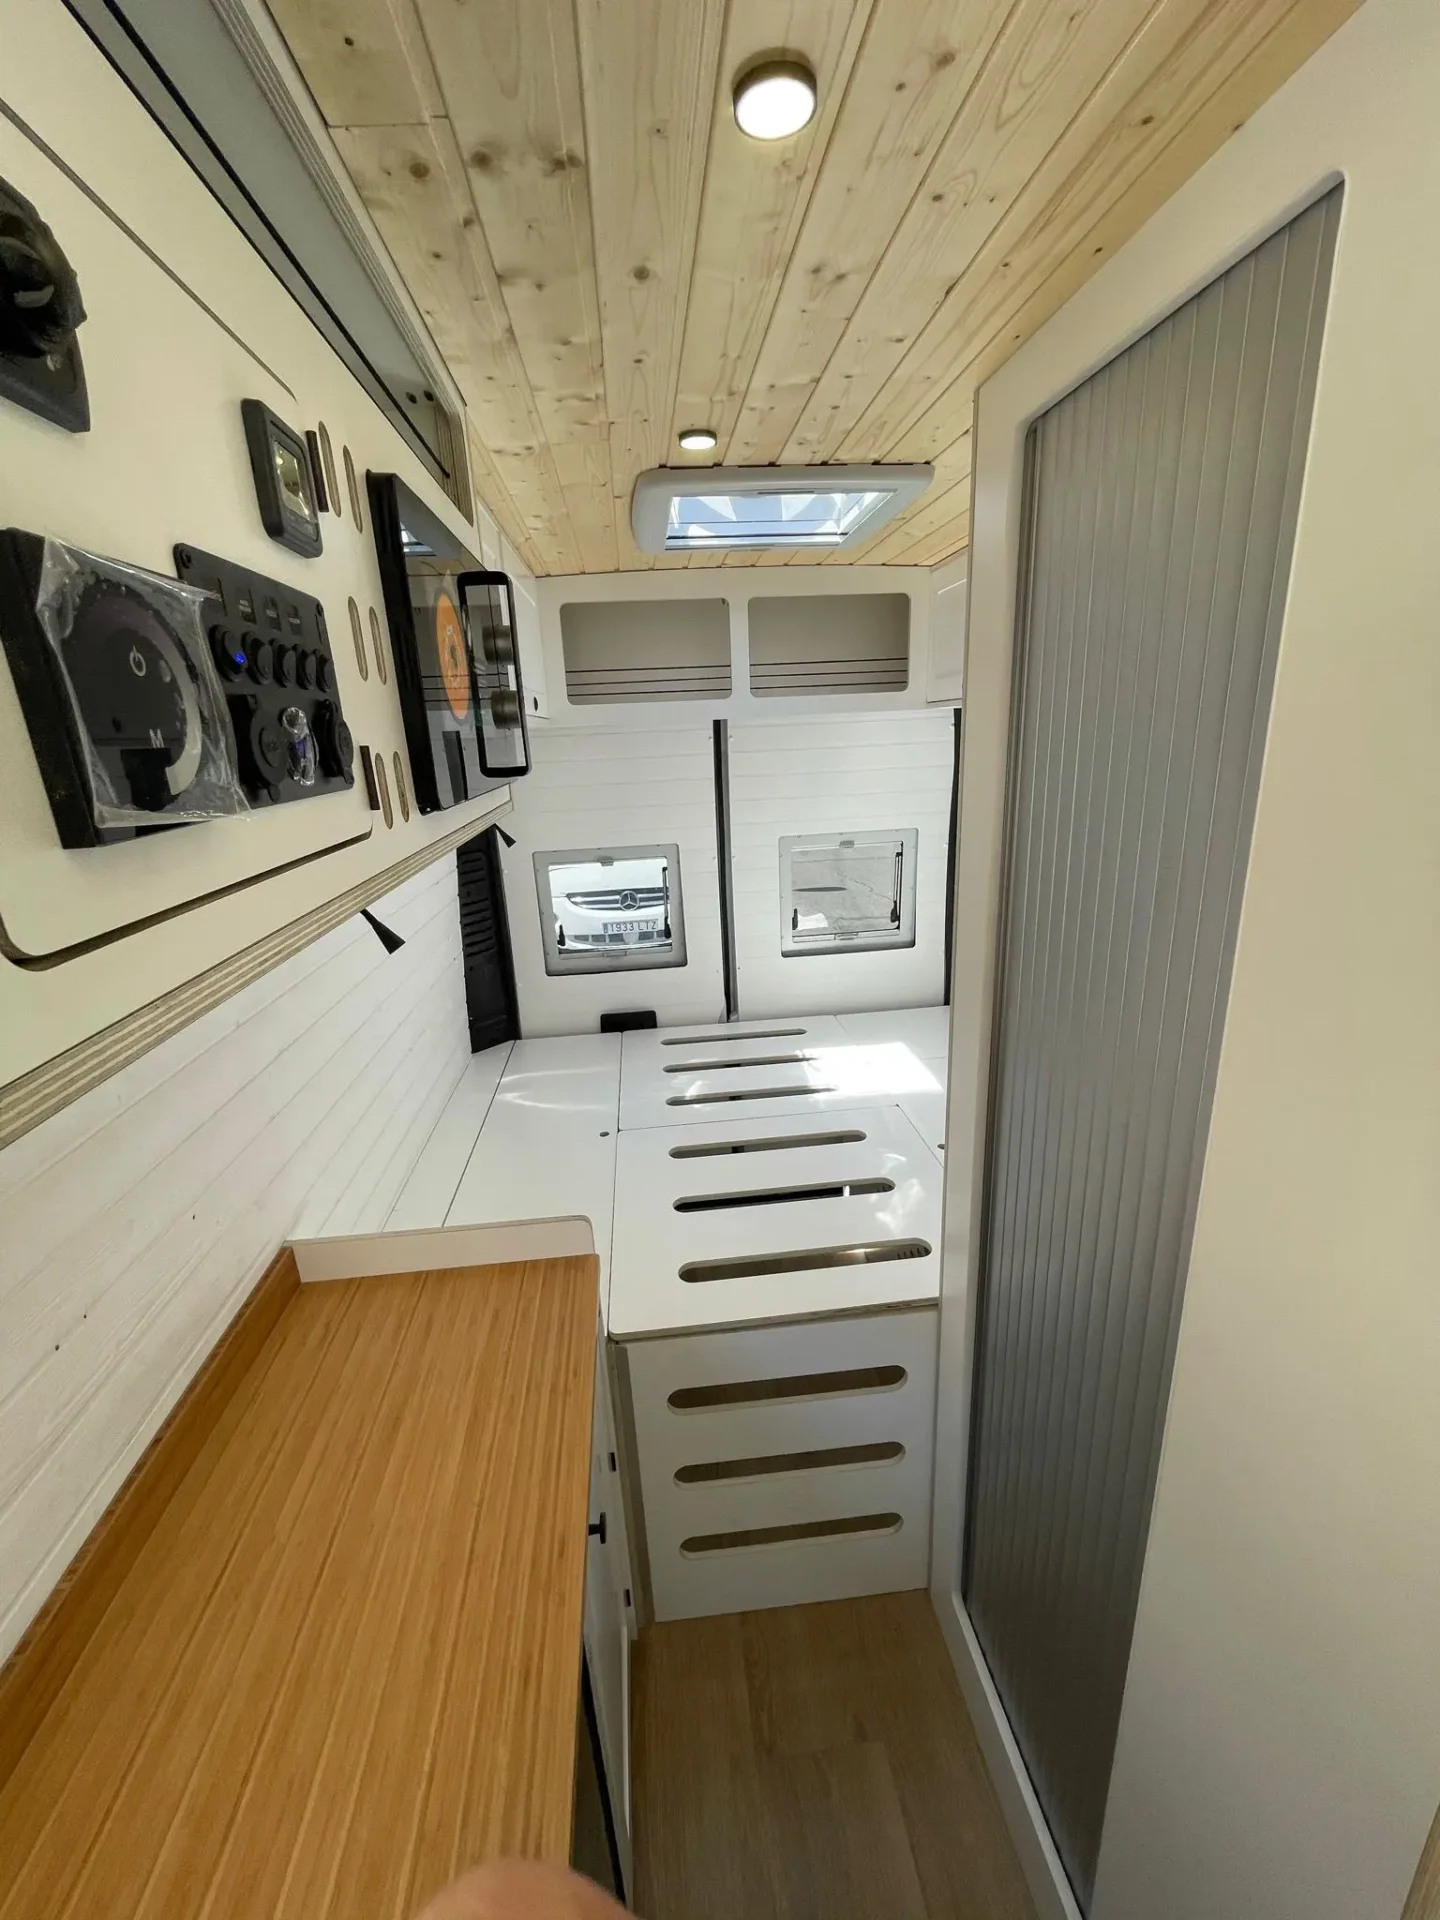 Interior moderno y minimalista de una furgoneta Ducato L4H3 camper con cama abatible sobre cabina, mostrando una cocina compacta con encimera de madera y gabinetes blancos.